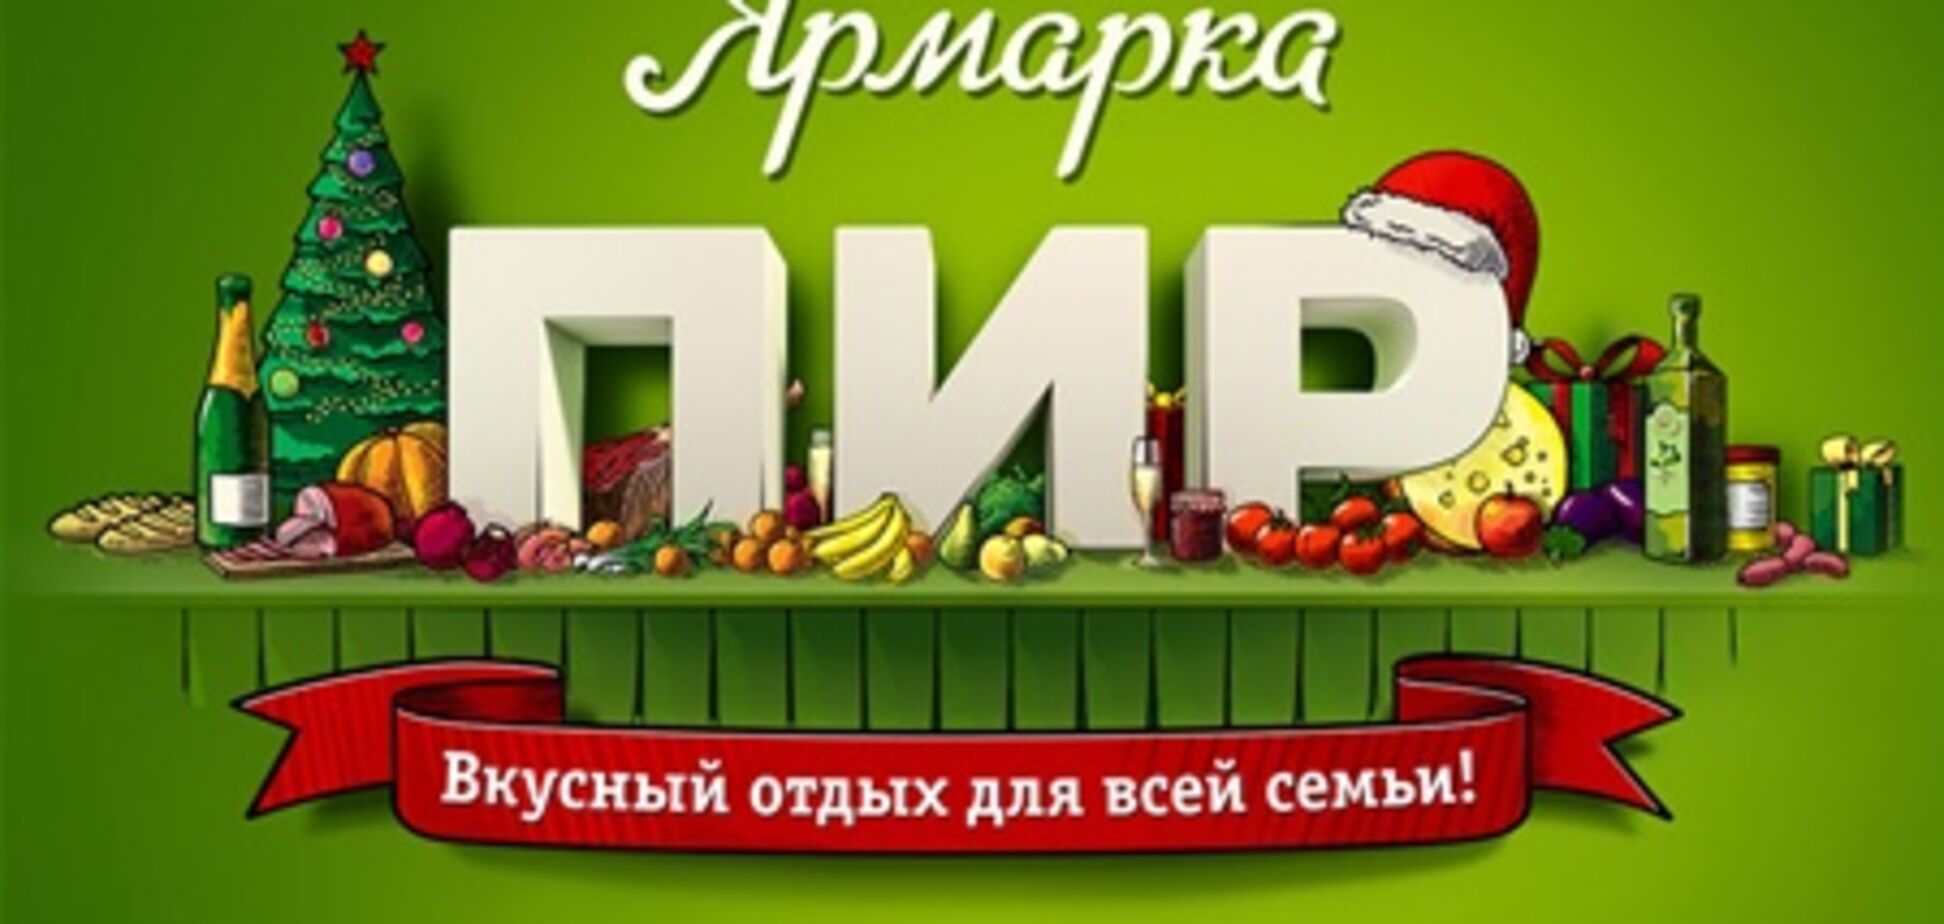 Гастрономическая ярмарка в Москве познакомит с кухней регионов